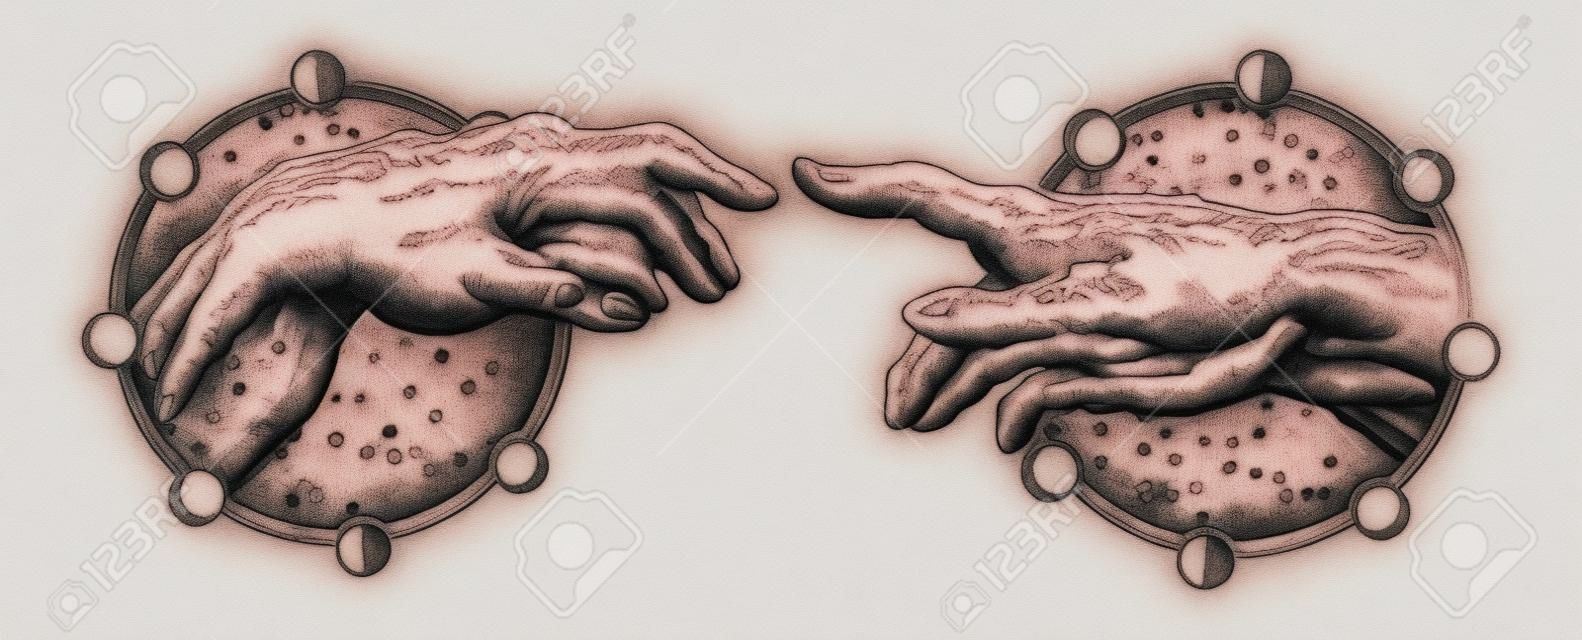 米開朗基羅上帝的觸摸。人的雙手撫摸著手指紋身和t卹設計。手紋身文藝復興。上帝和亞當，是靈性，宗教，連接和互動的象徵